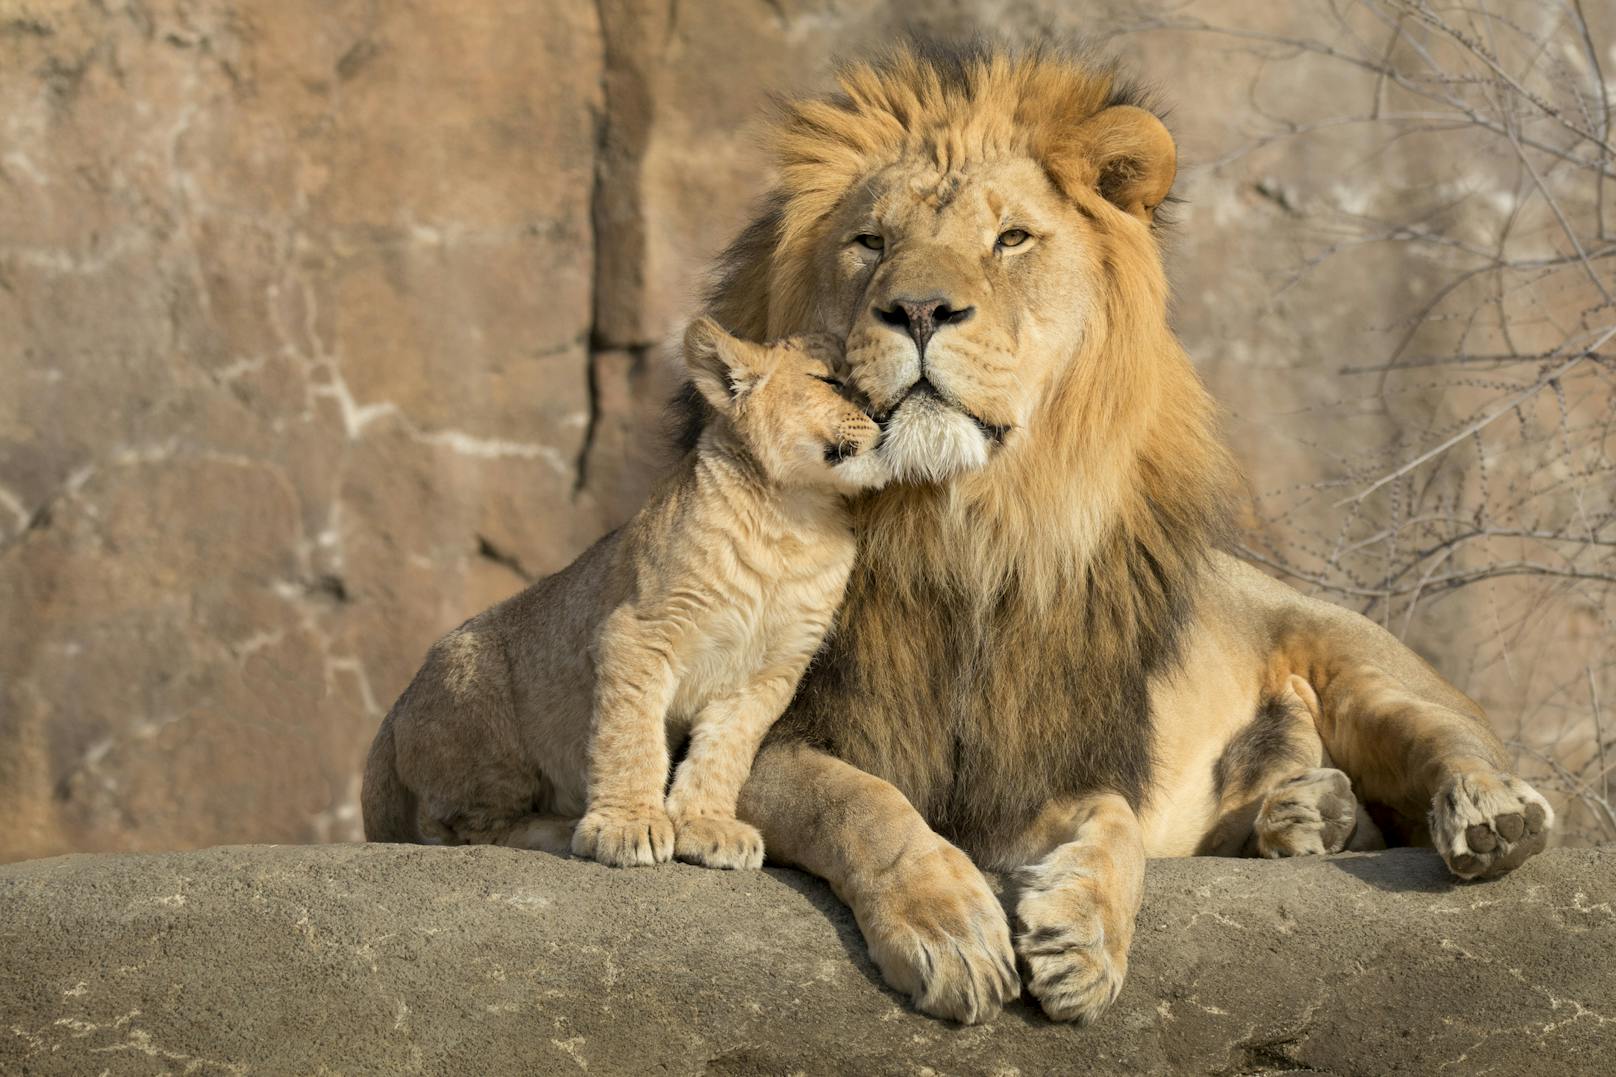 Tierpfleger aus dem Marghazar Zoo wollten die beiden Löwen mit Feuer in Transportboxen treiben. (Symbolbild)